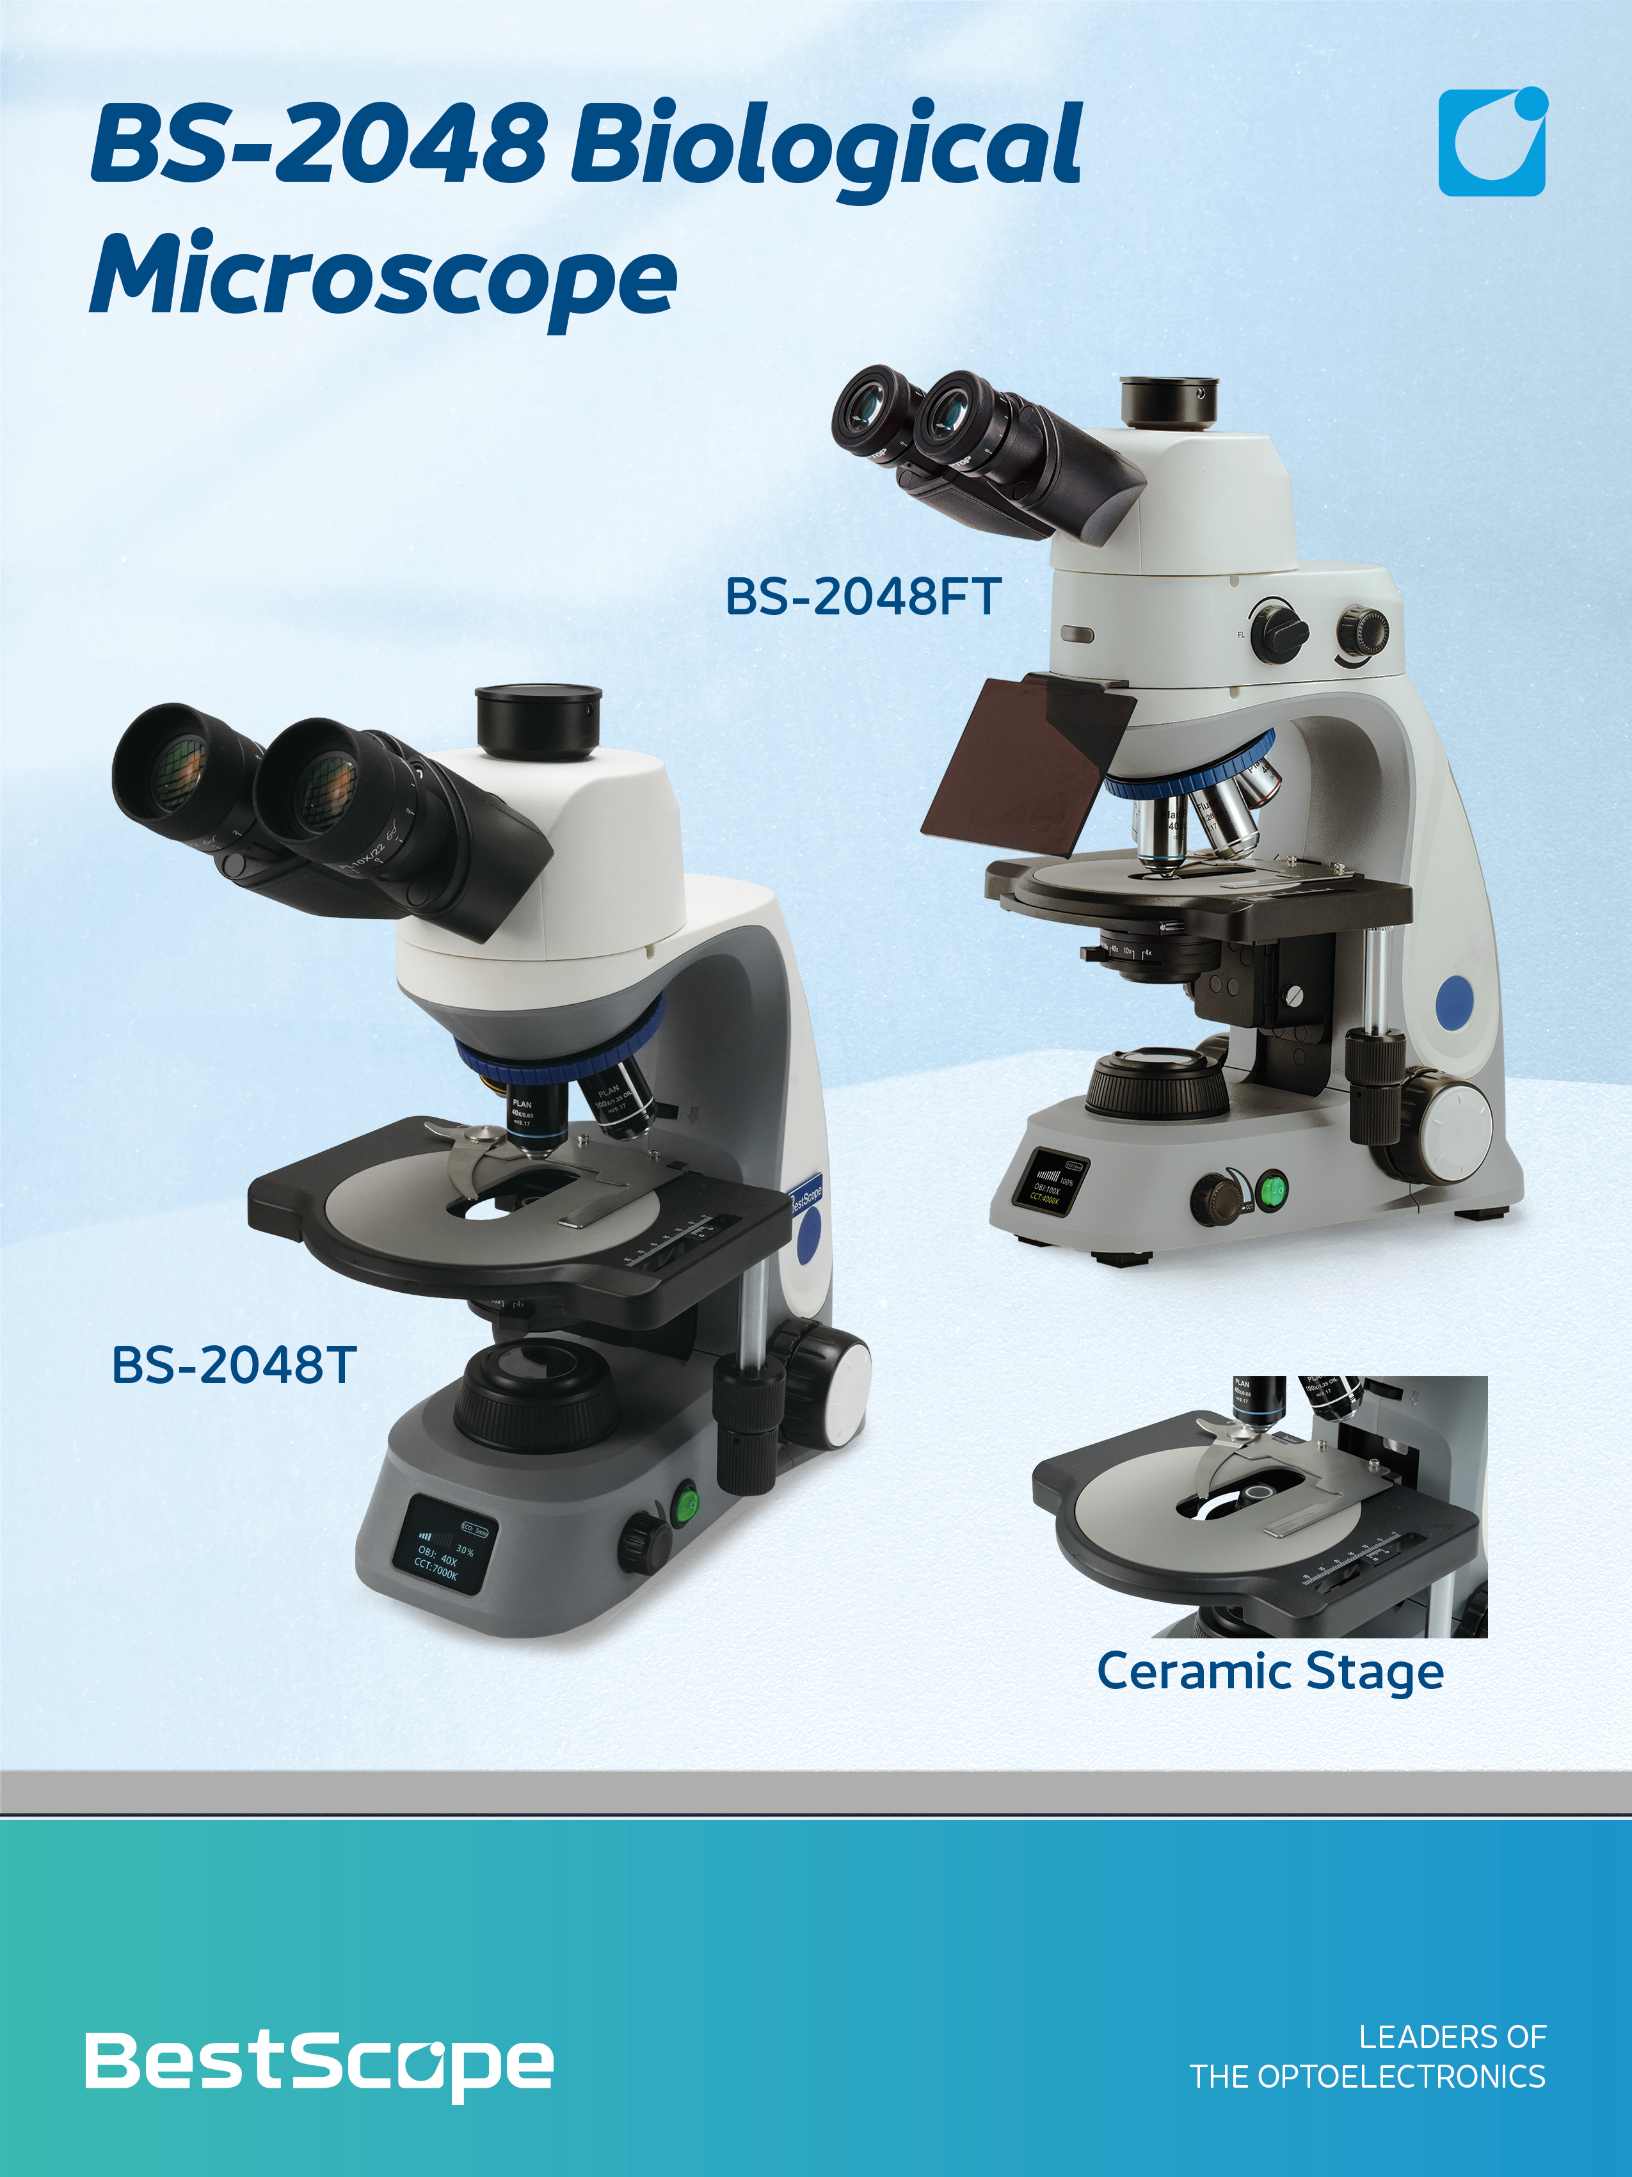 BS-2048 Mikroskopio Biologikoa